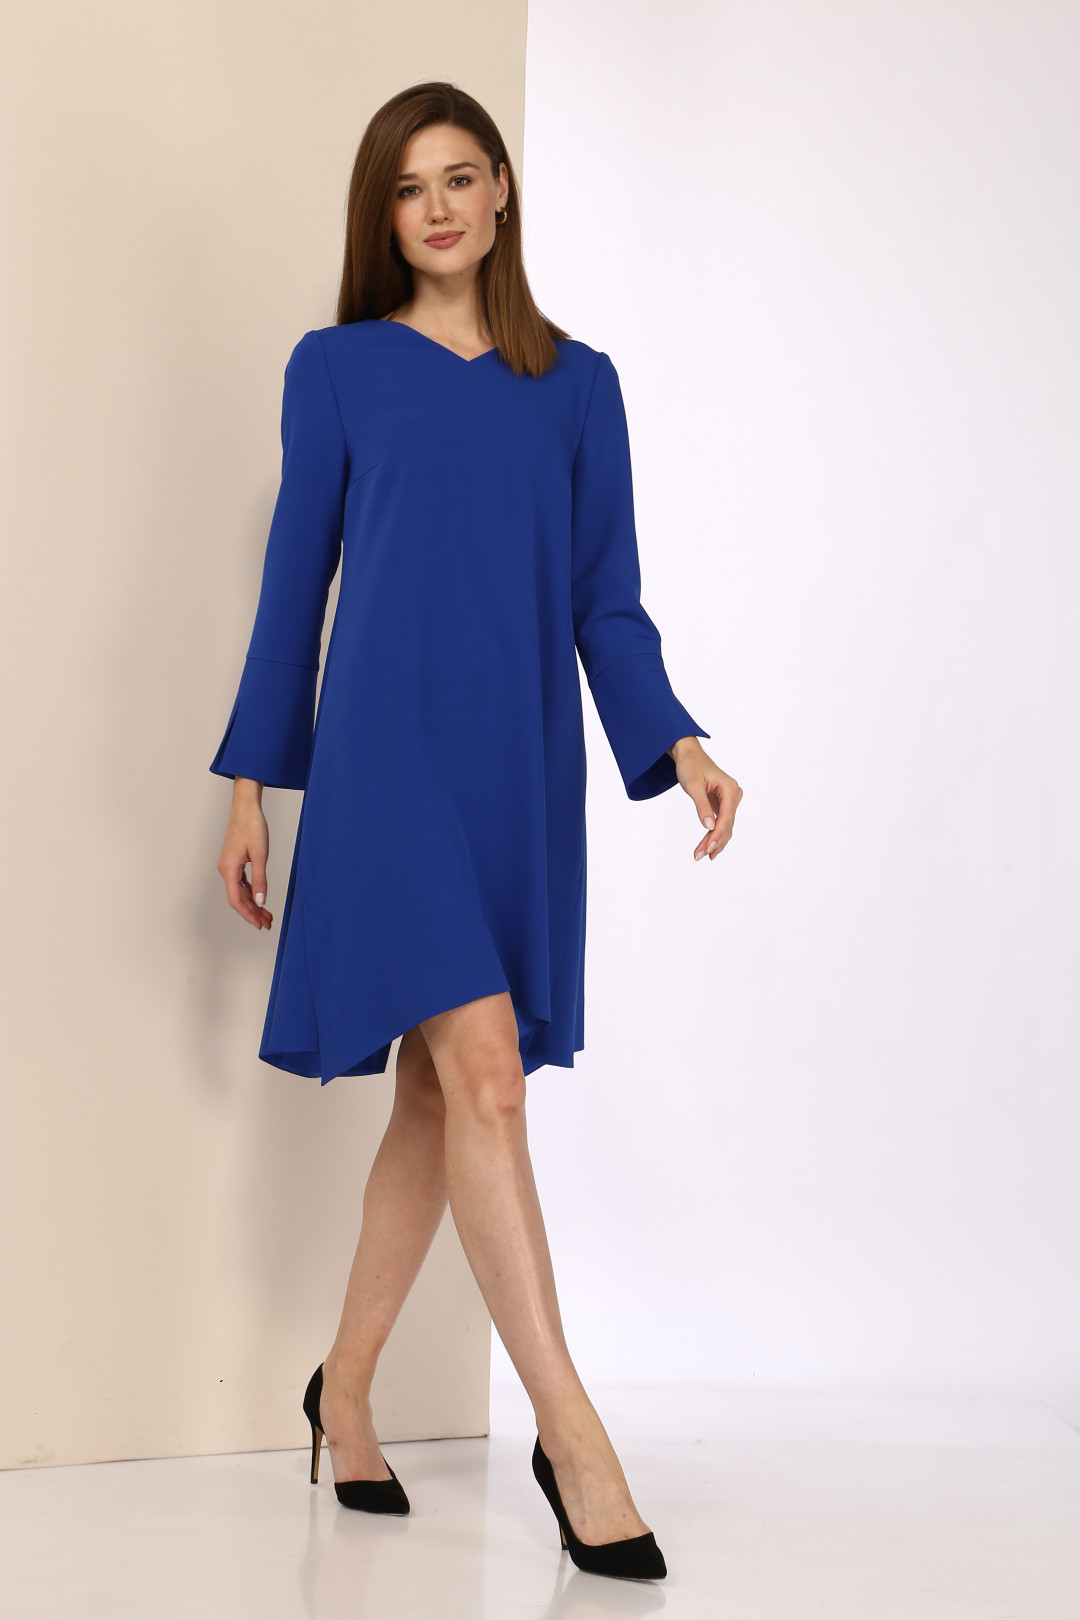 Платье Карина Делюкс В-101-1 синий